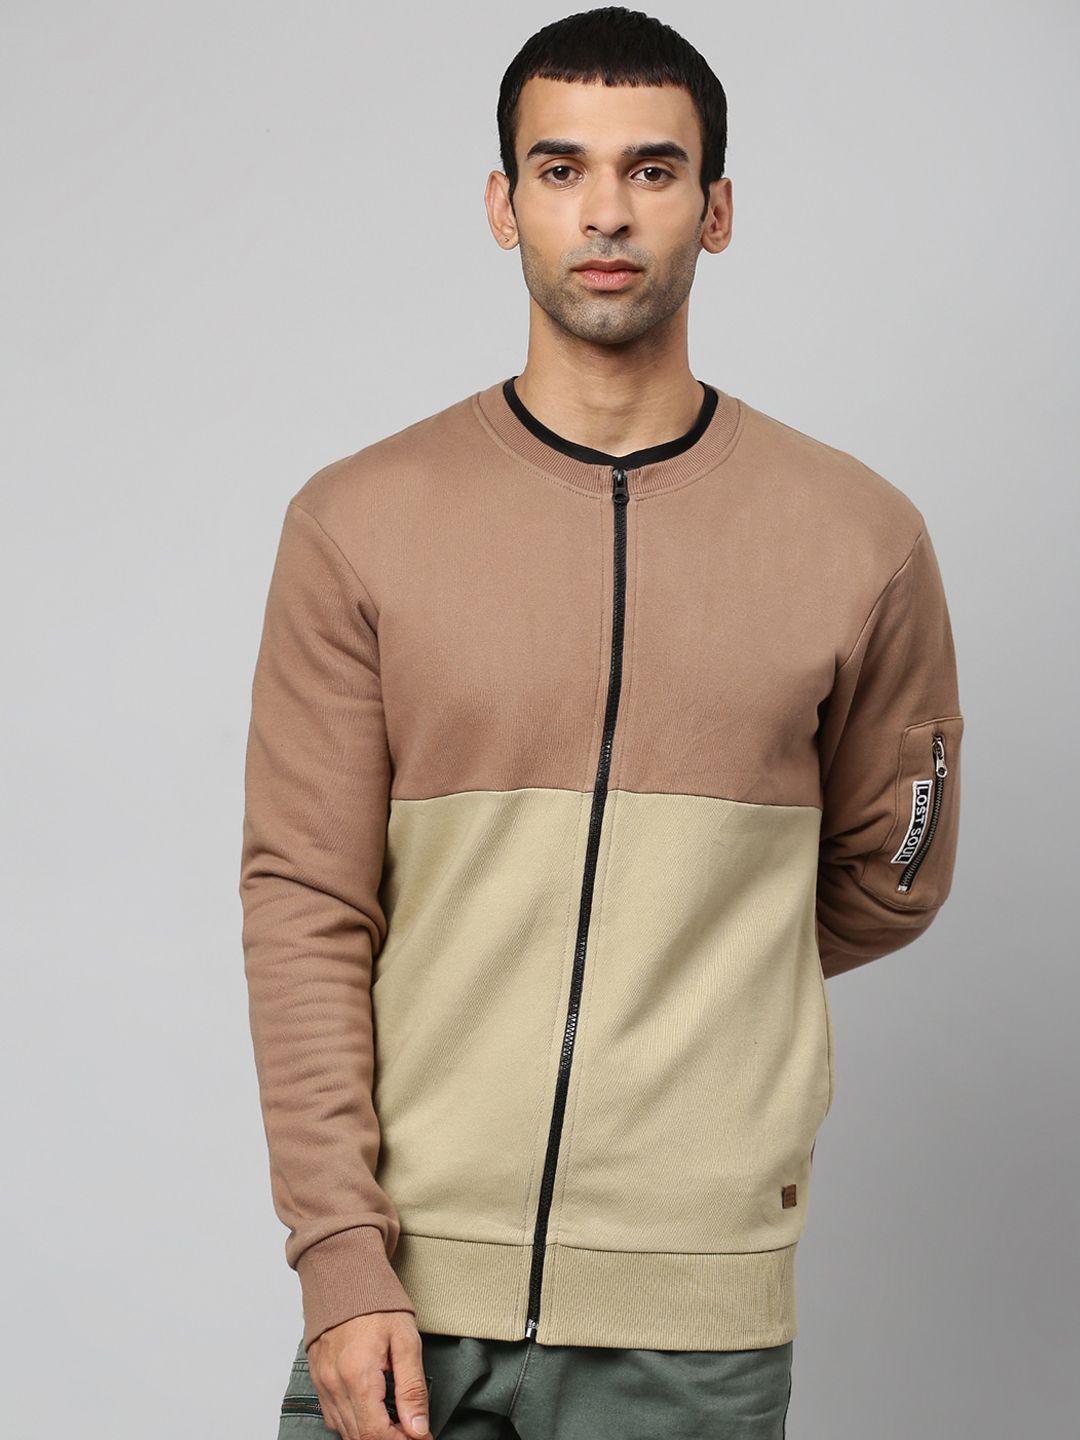 campus-sutra-men-beige-&-brown-colourblocked-cotton-sweatshirt